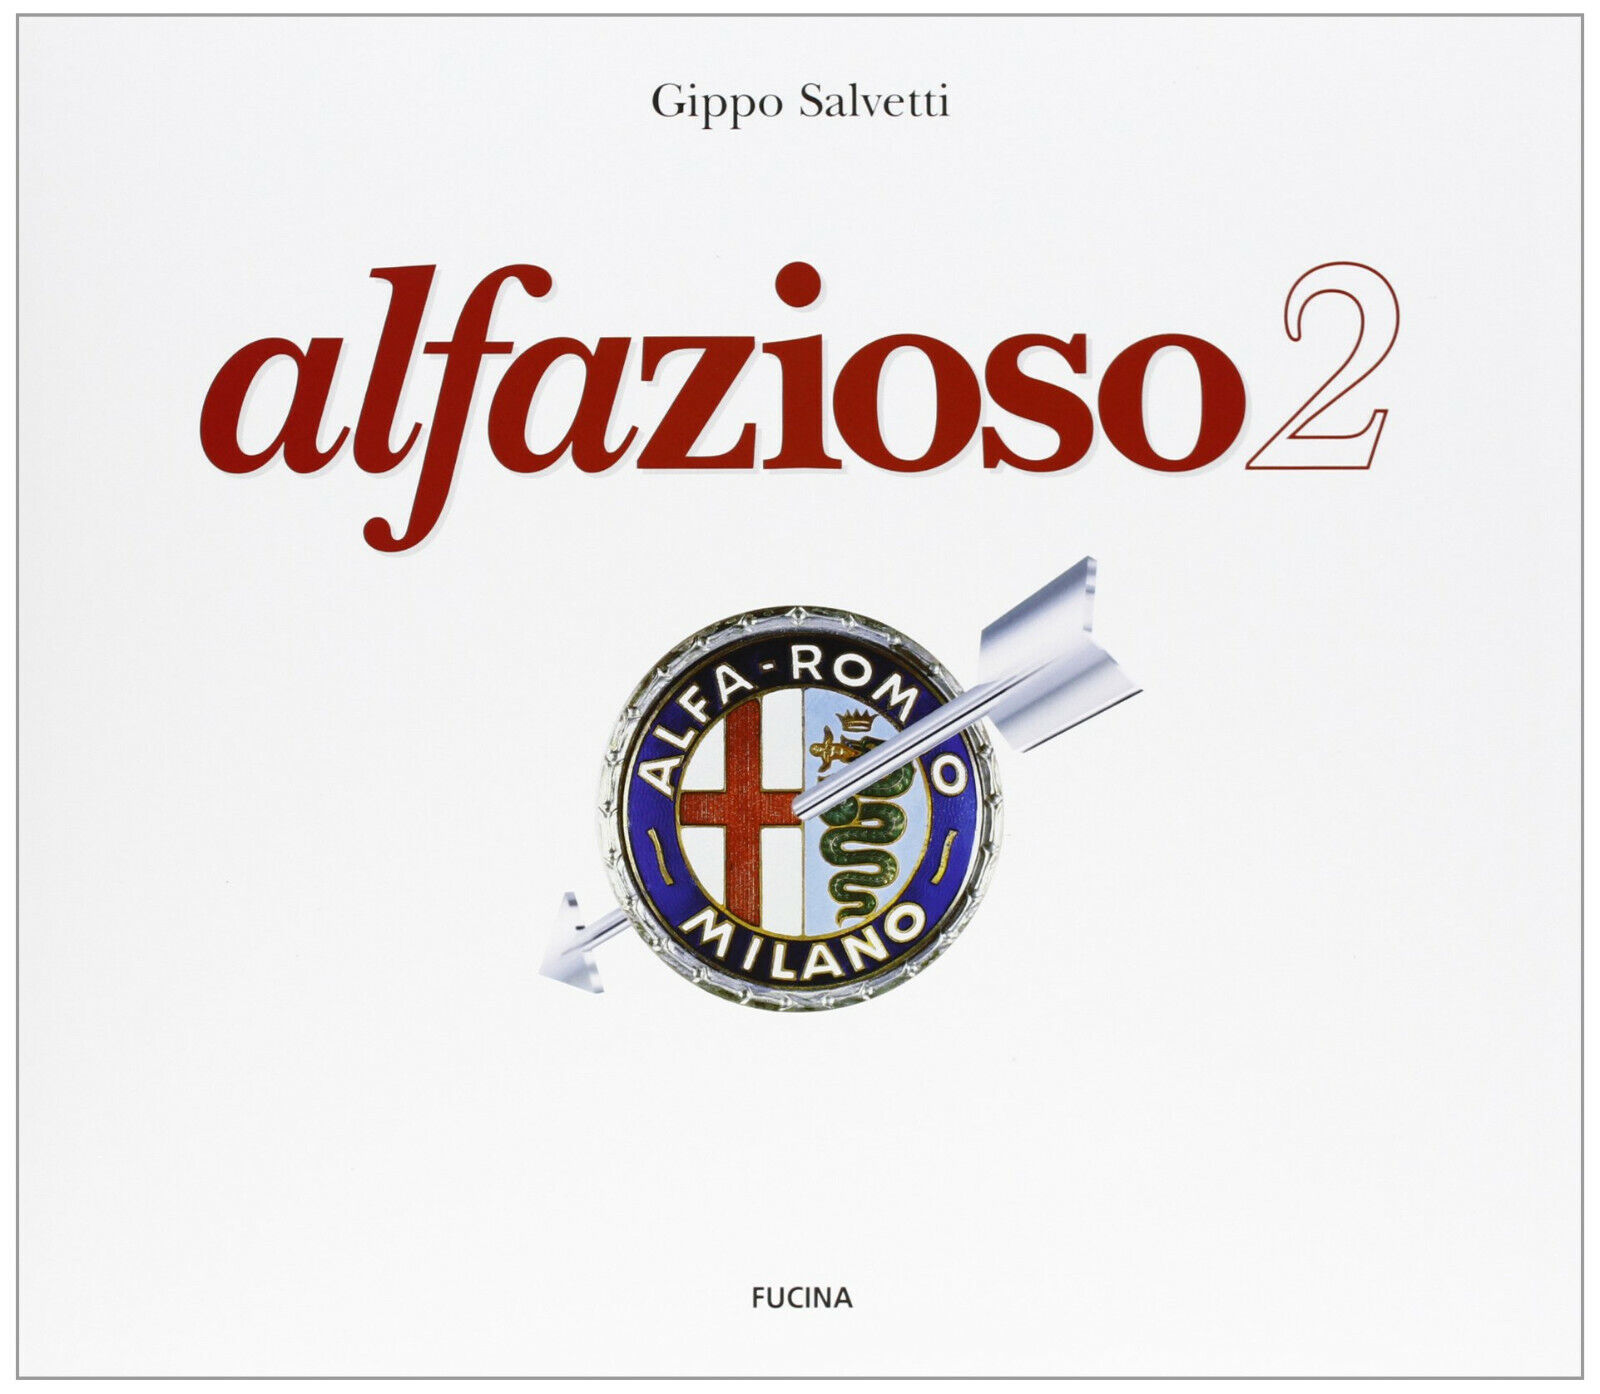 Alfazioso 2 - Gianfilippo Salvetti - Fucina, 2007